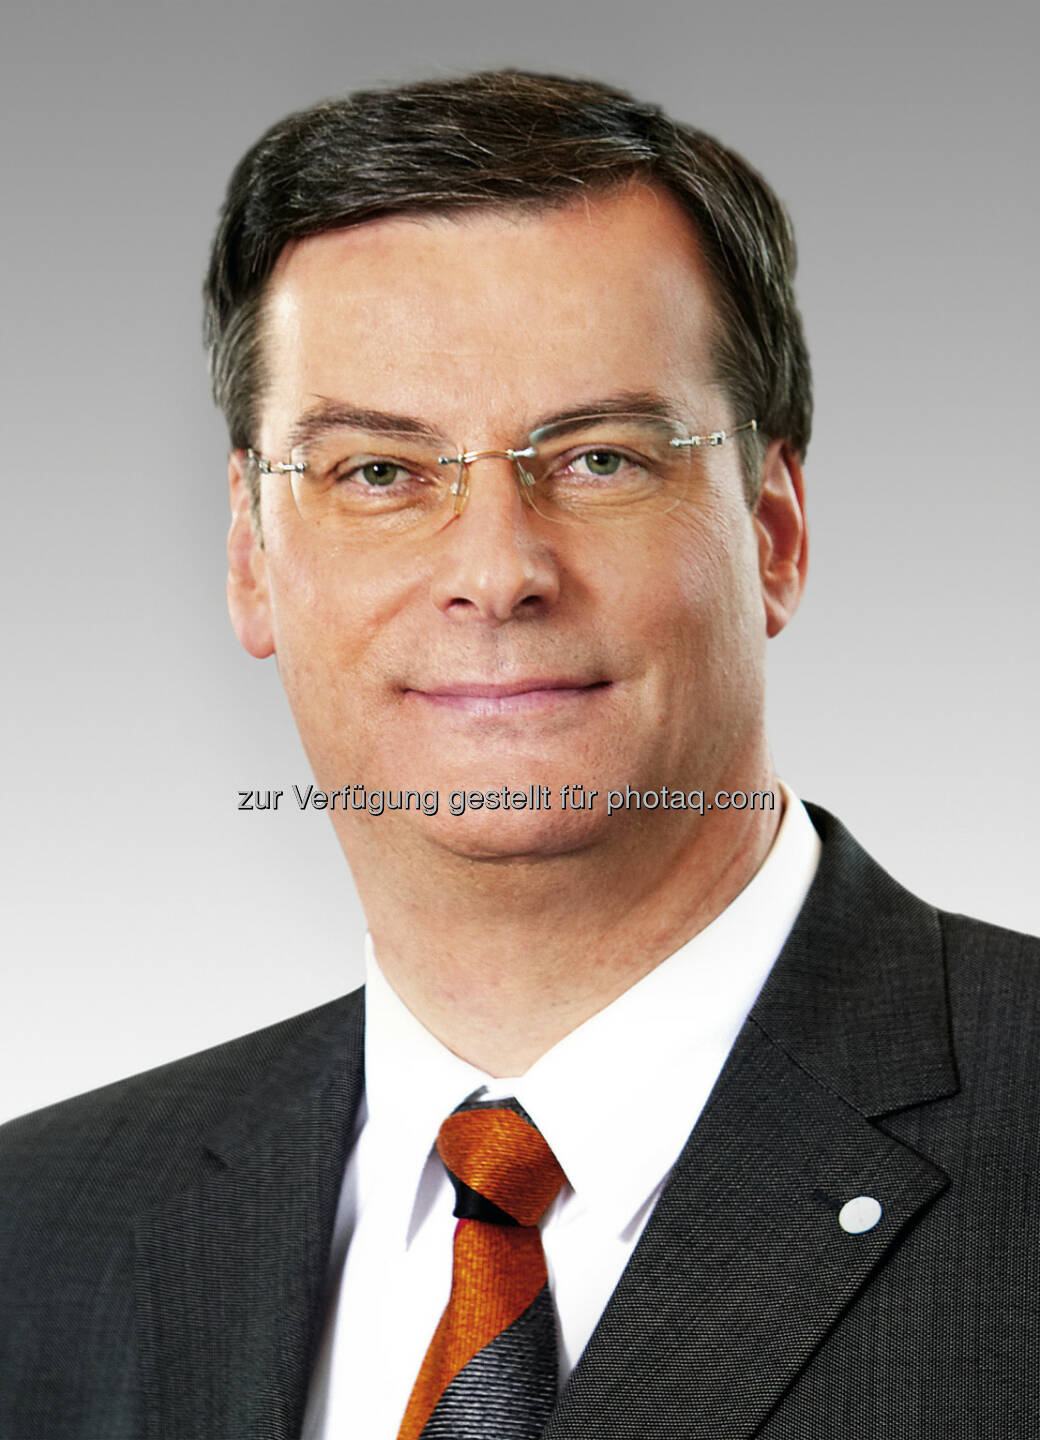 Richard Pott soll Aufsichtsratsvorsitzender von Bayer MaterialScience werden. (C) Bayer AG